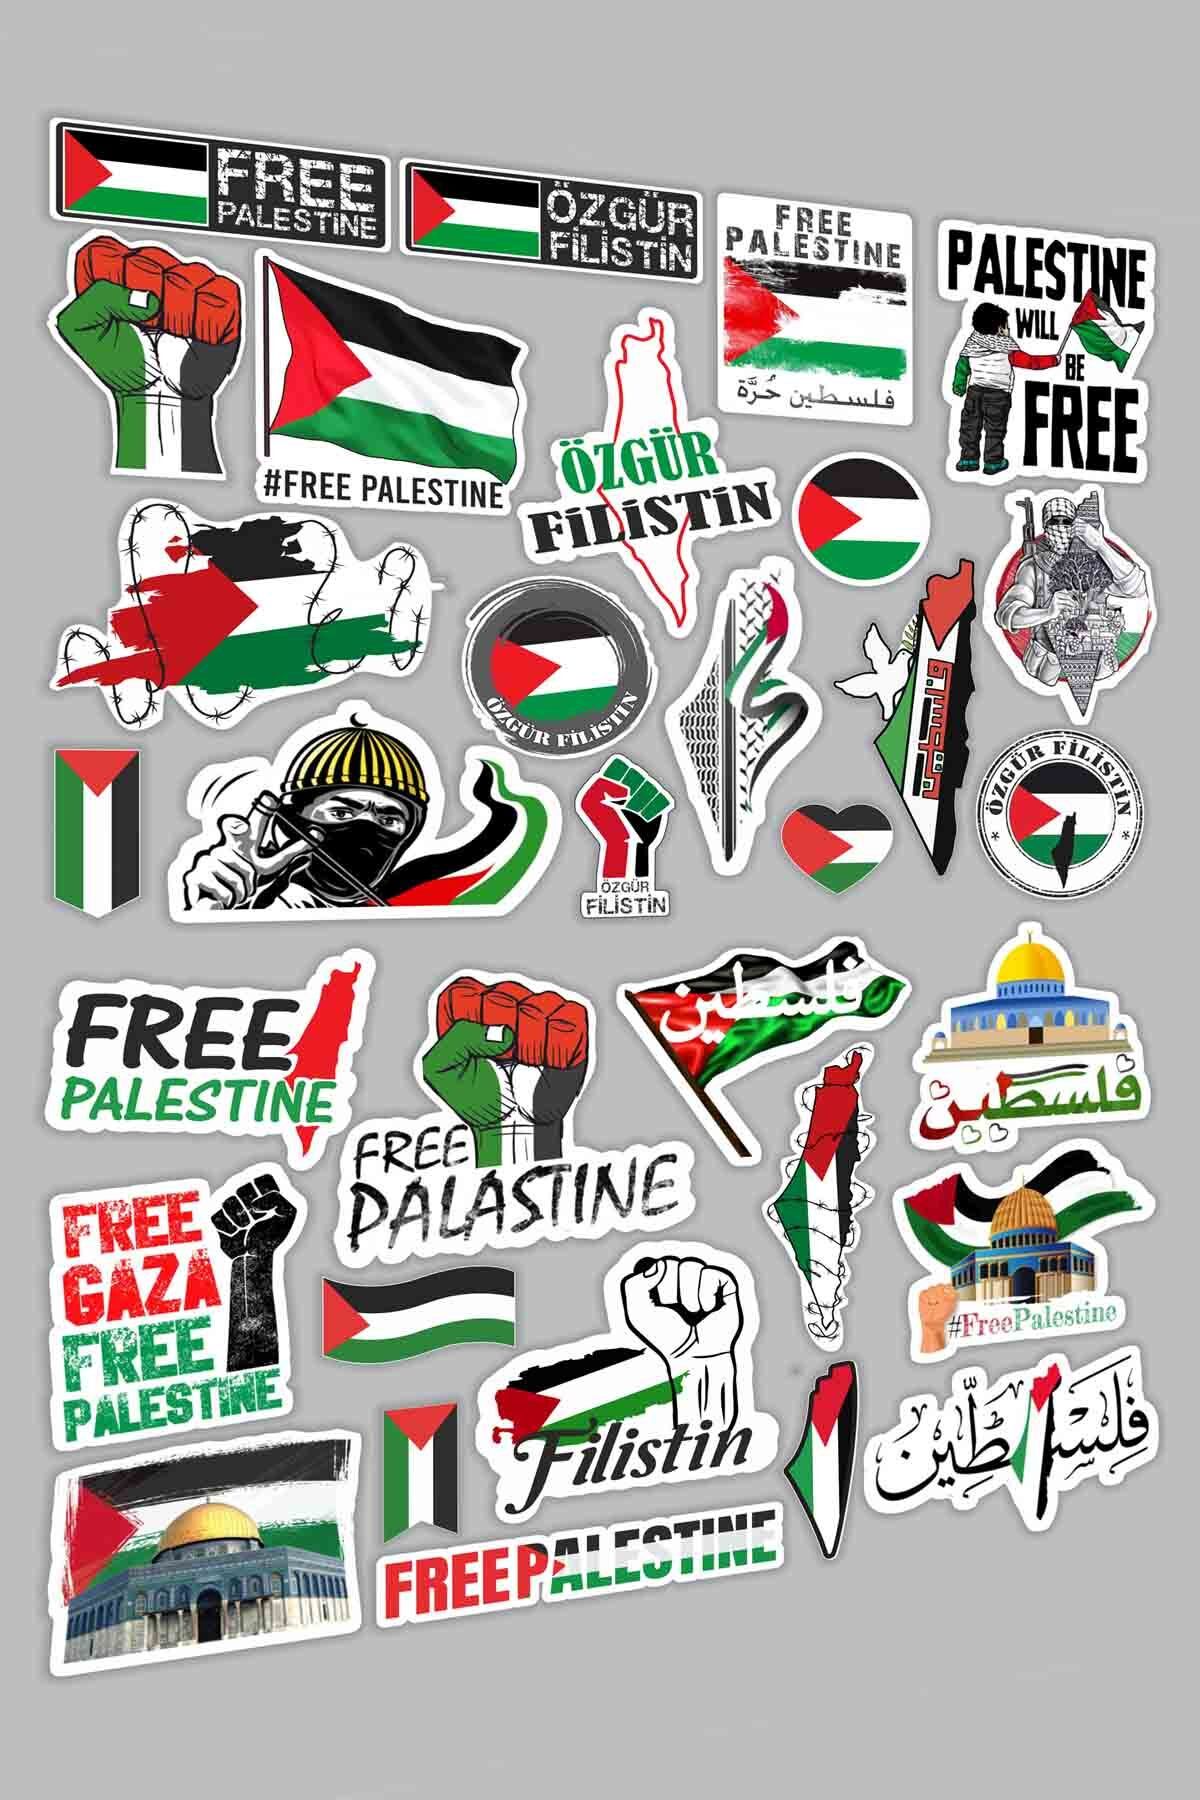 Vice Filistin Temalı Etiket Seti - Free Palestine - Özgür Filistin - 32 adet